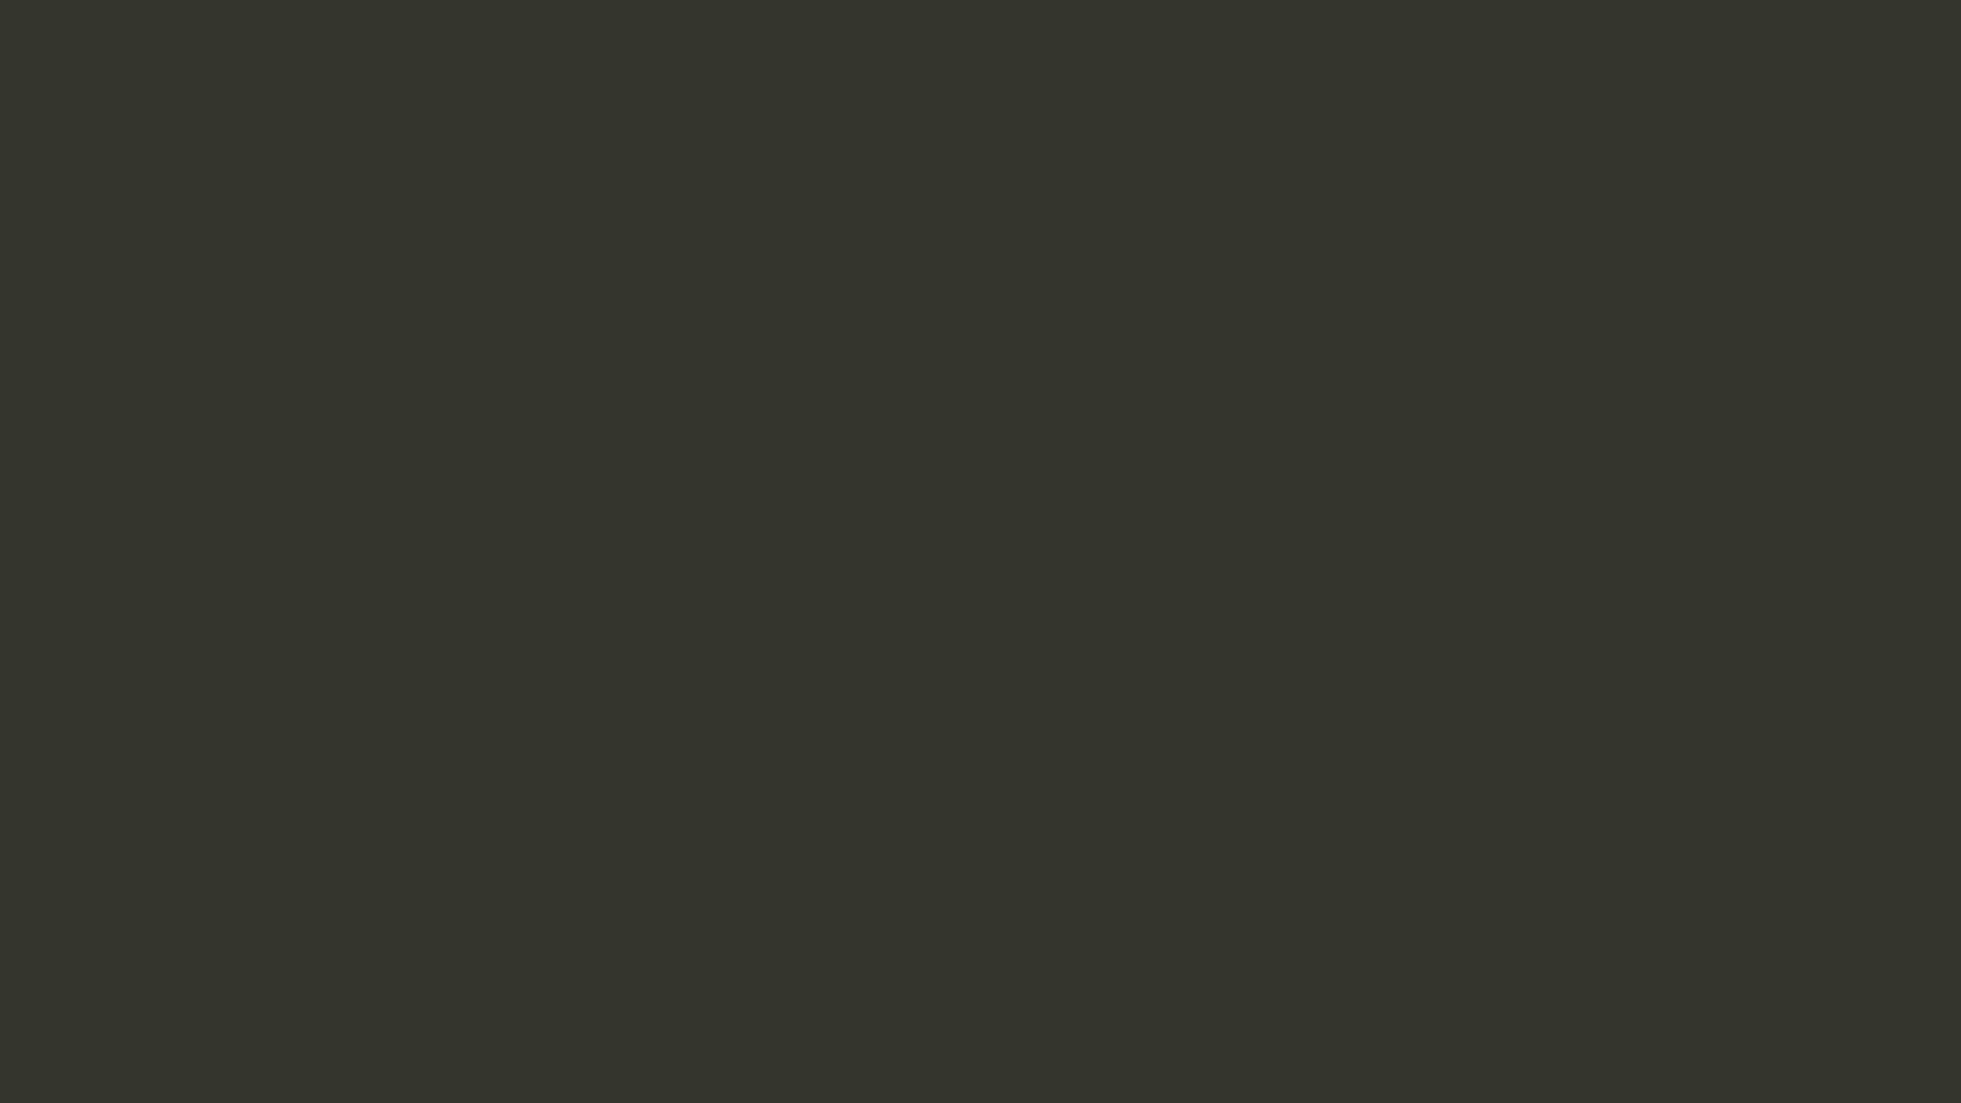 Иван Крамской. Лунная ночь (фрагмент). 1880. Государственная Третьяковская галерея, Москва